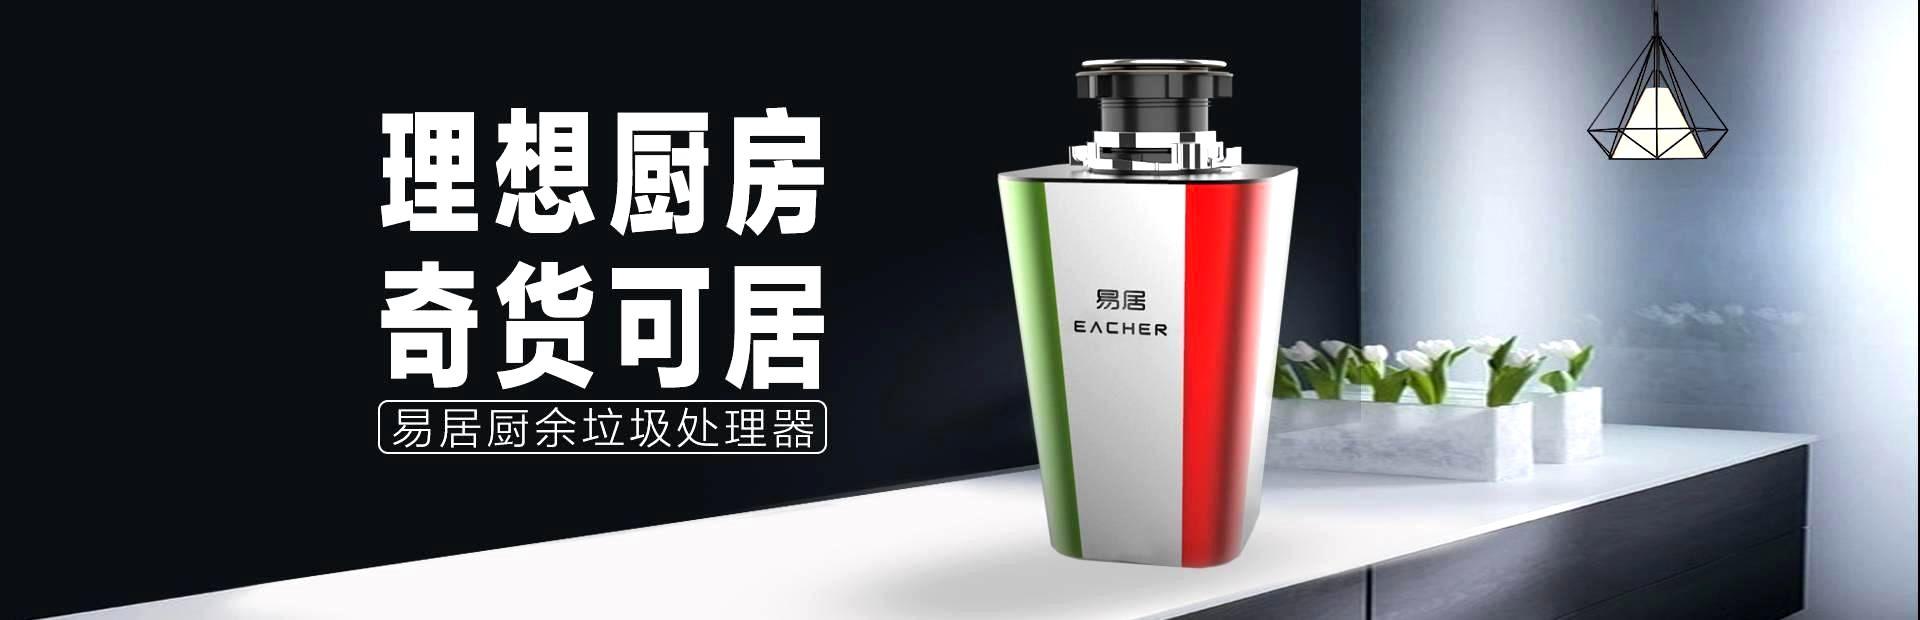 宁波j9.com环保科技有限公司